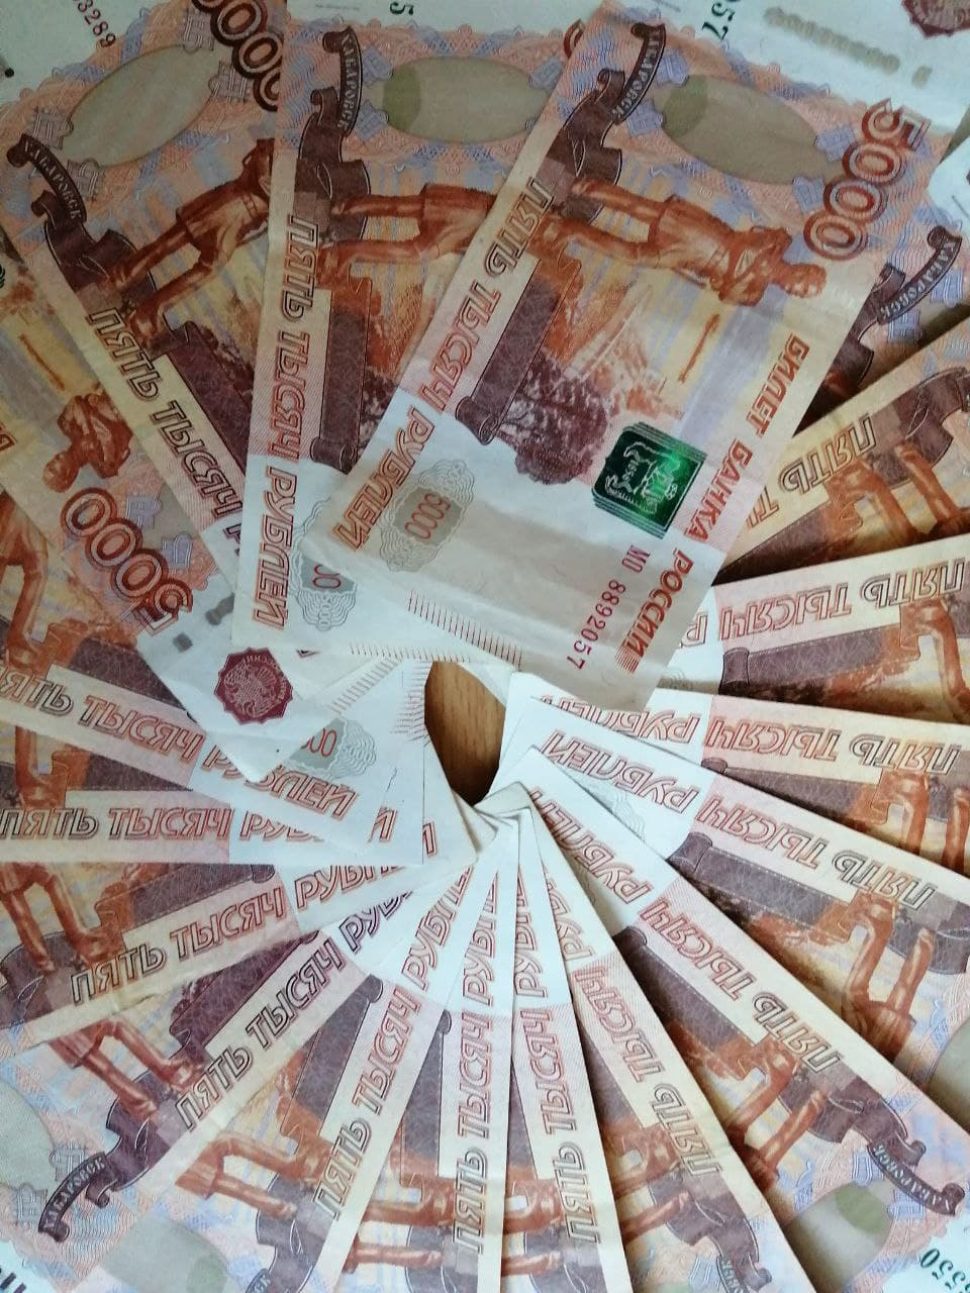  Архангелогородка отдала мошенникам больше одного миллиона рублей